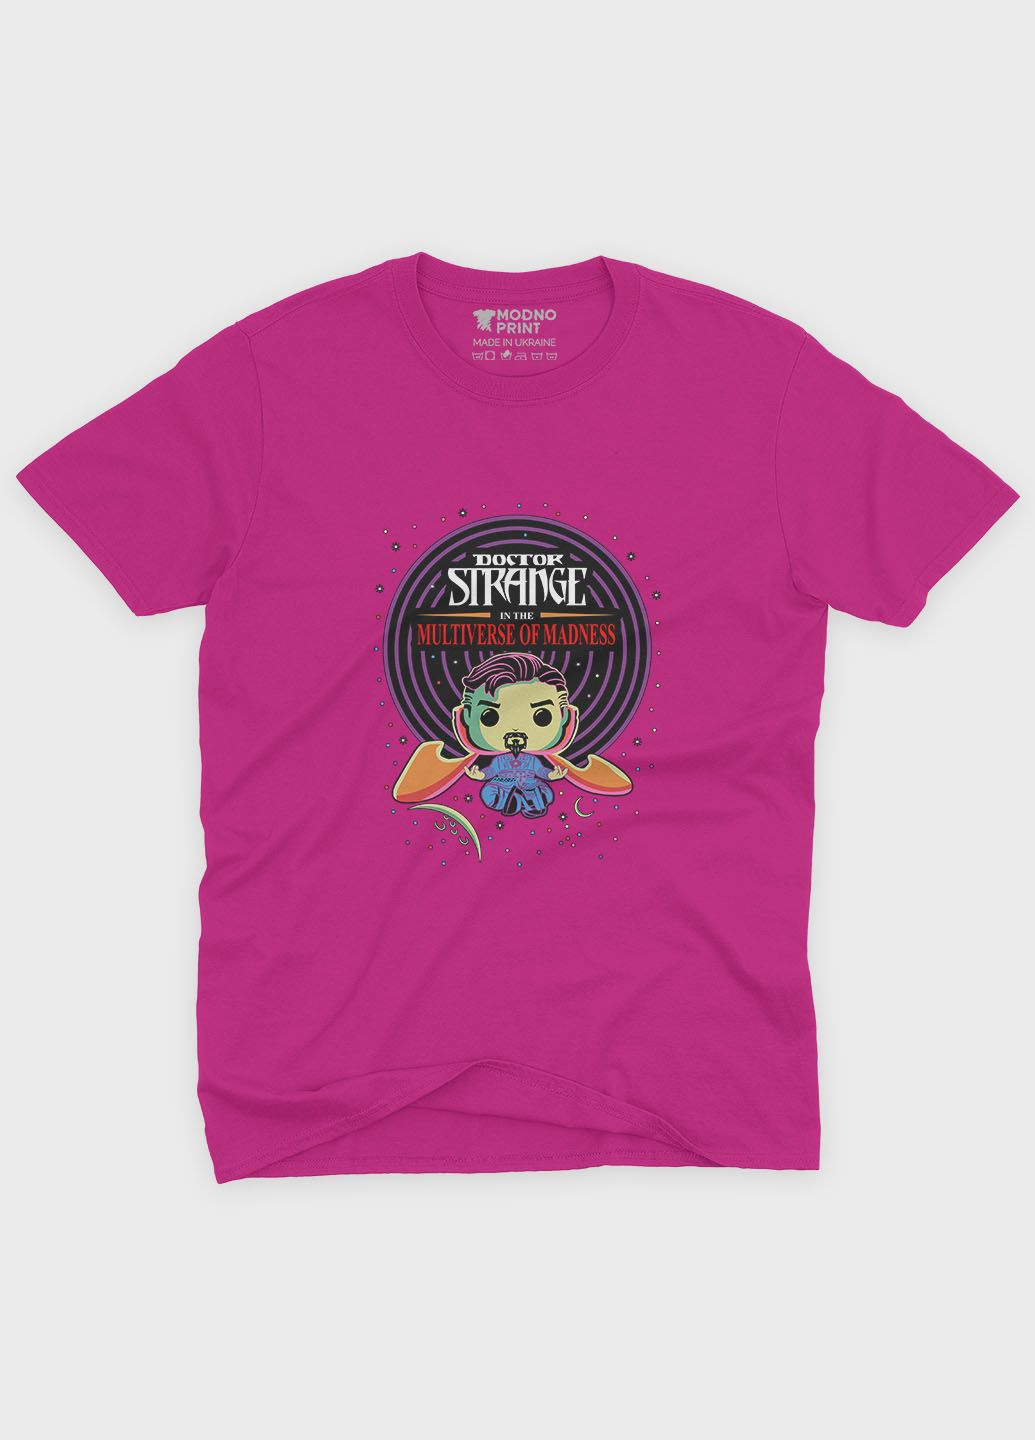 Розовая демисезонная футболка для девочки с принтом супергероя - доктор стрэндж (ts001-1-fuxj-006-020-007-g) Modno